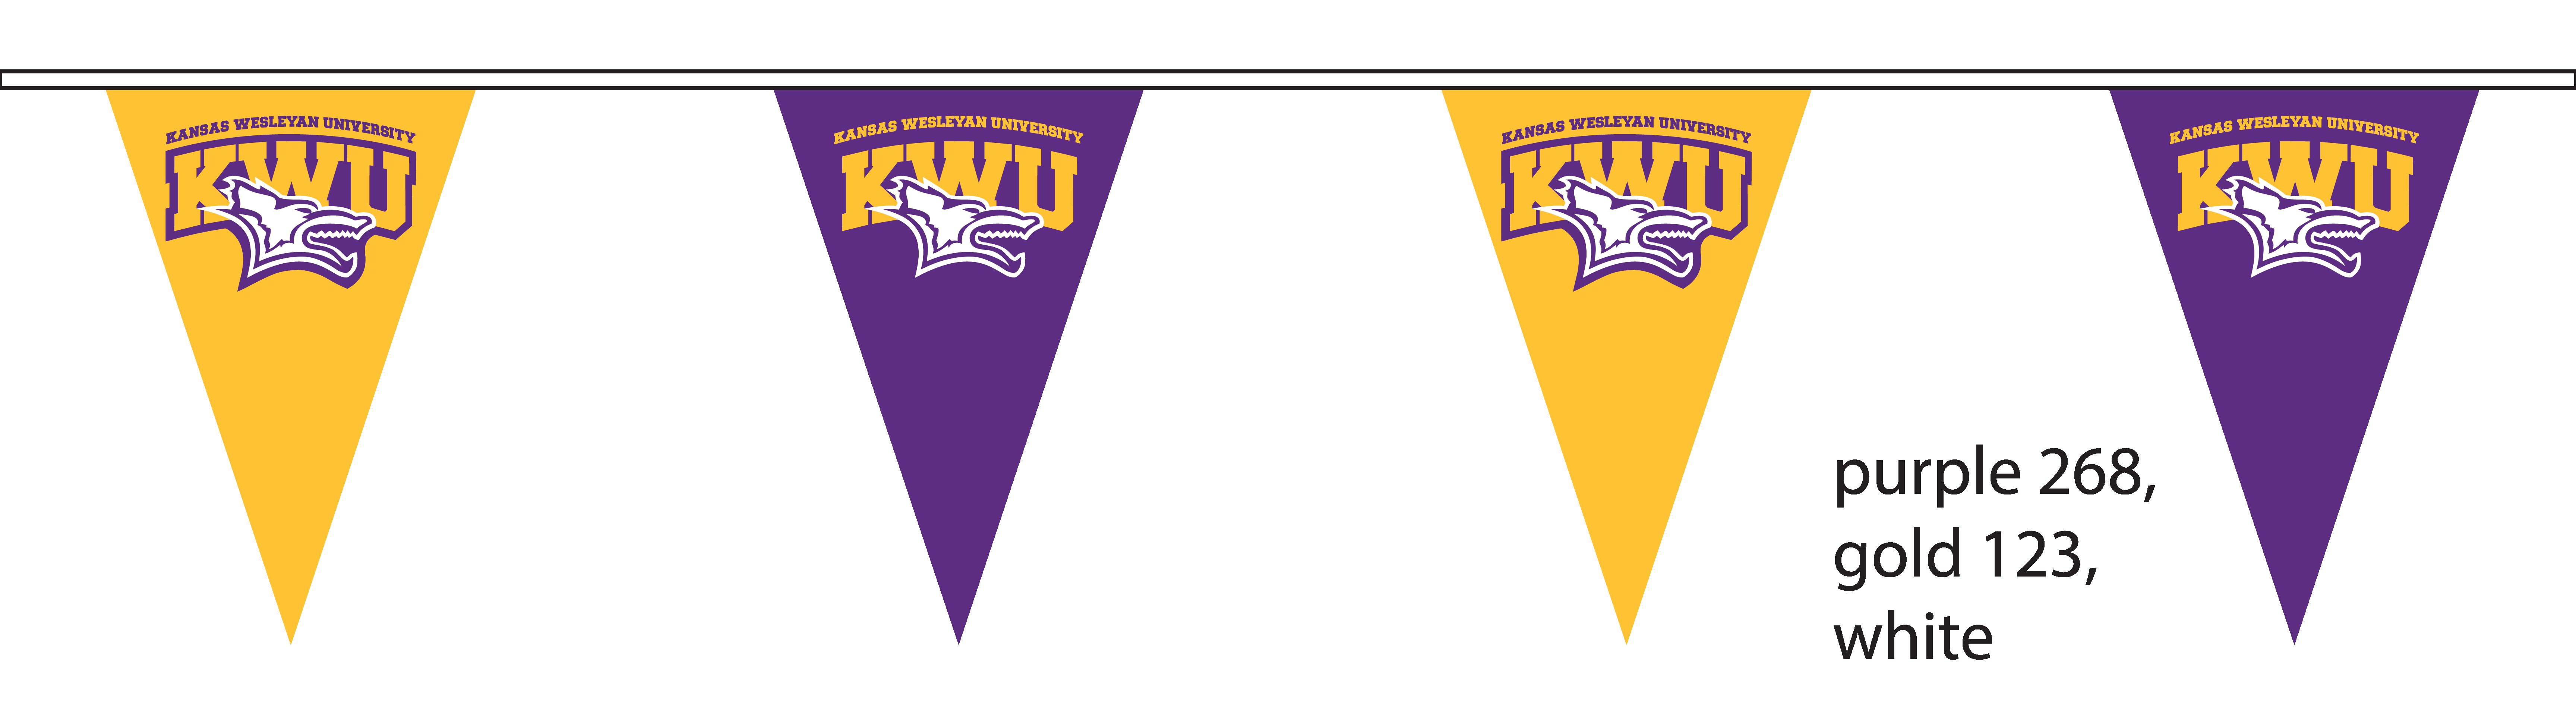 KWU Mascot Triangle Banners